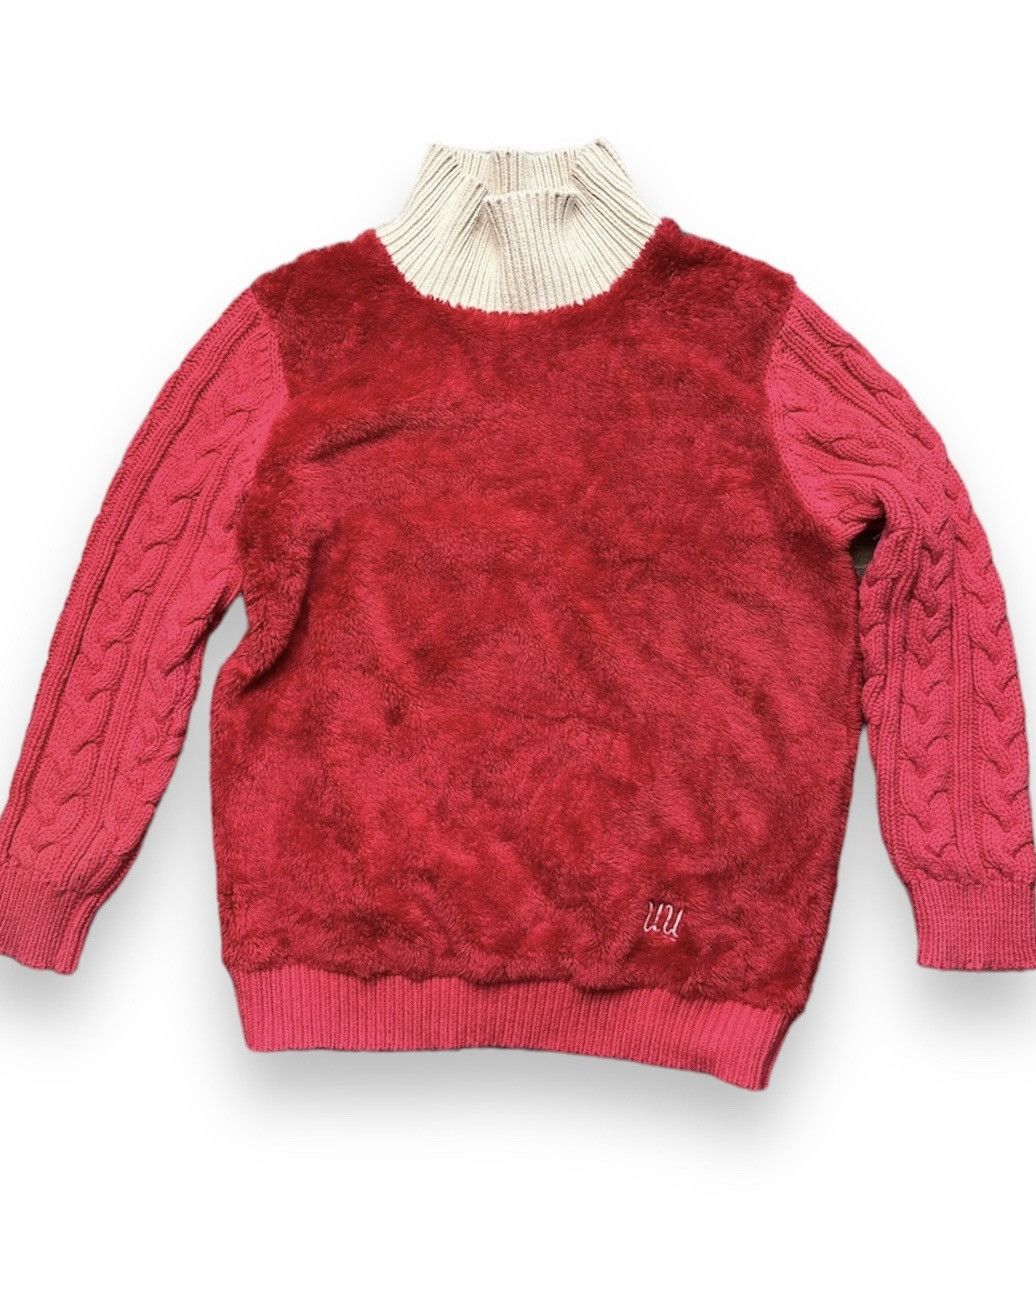 Undercover X Uniqlo Sweater Rare Red Colour - 1